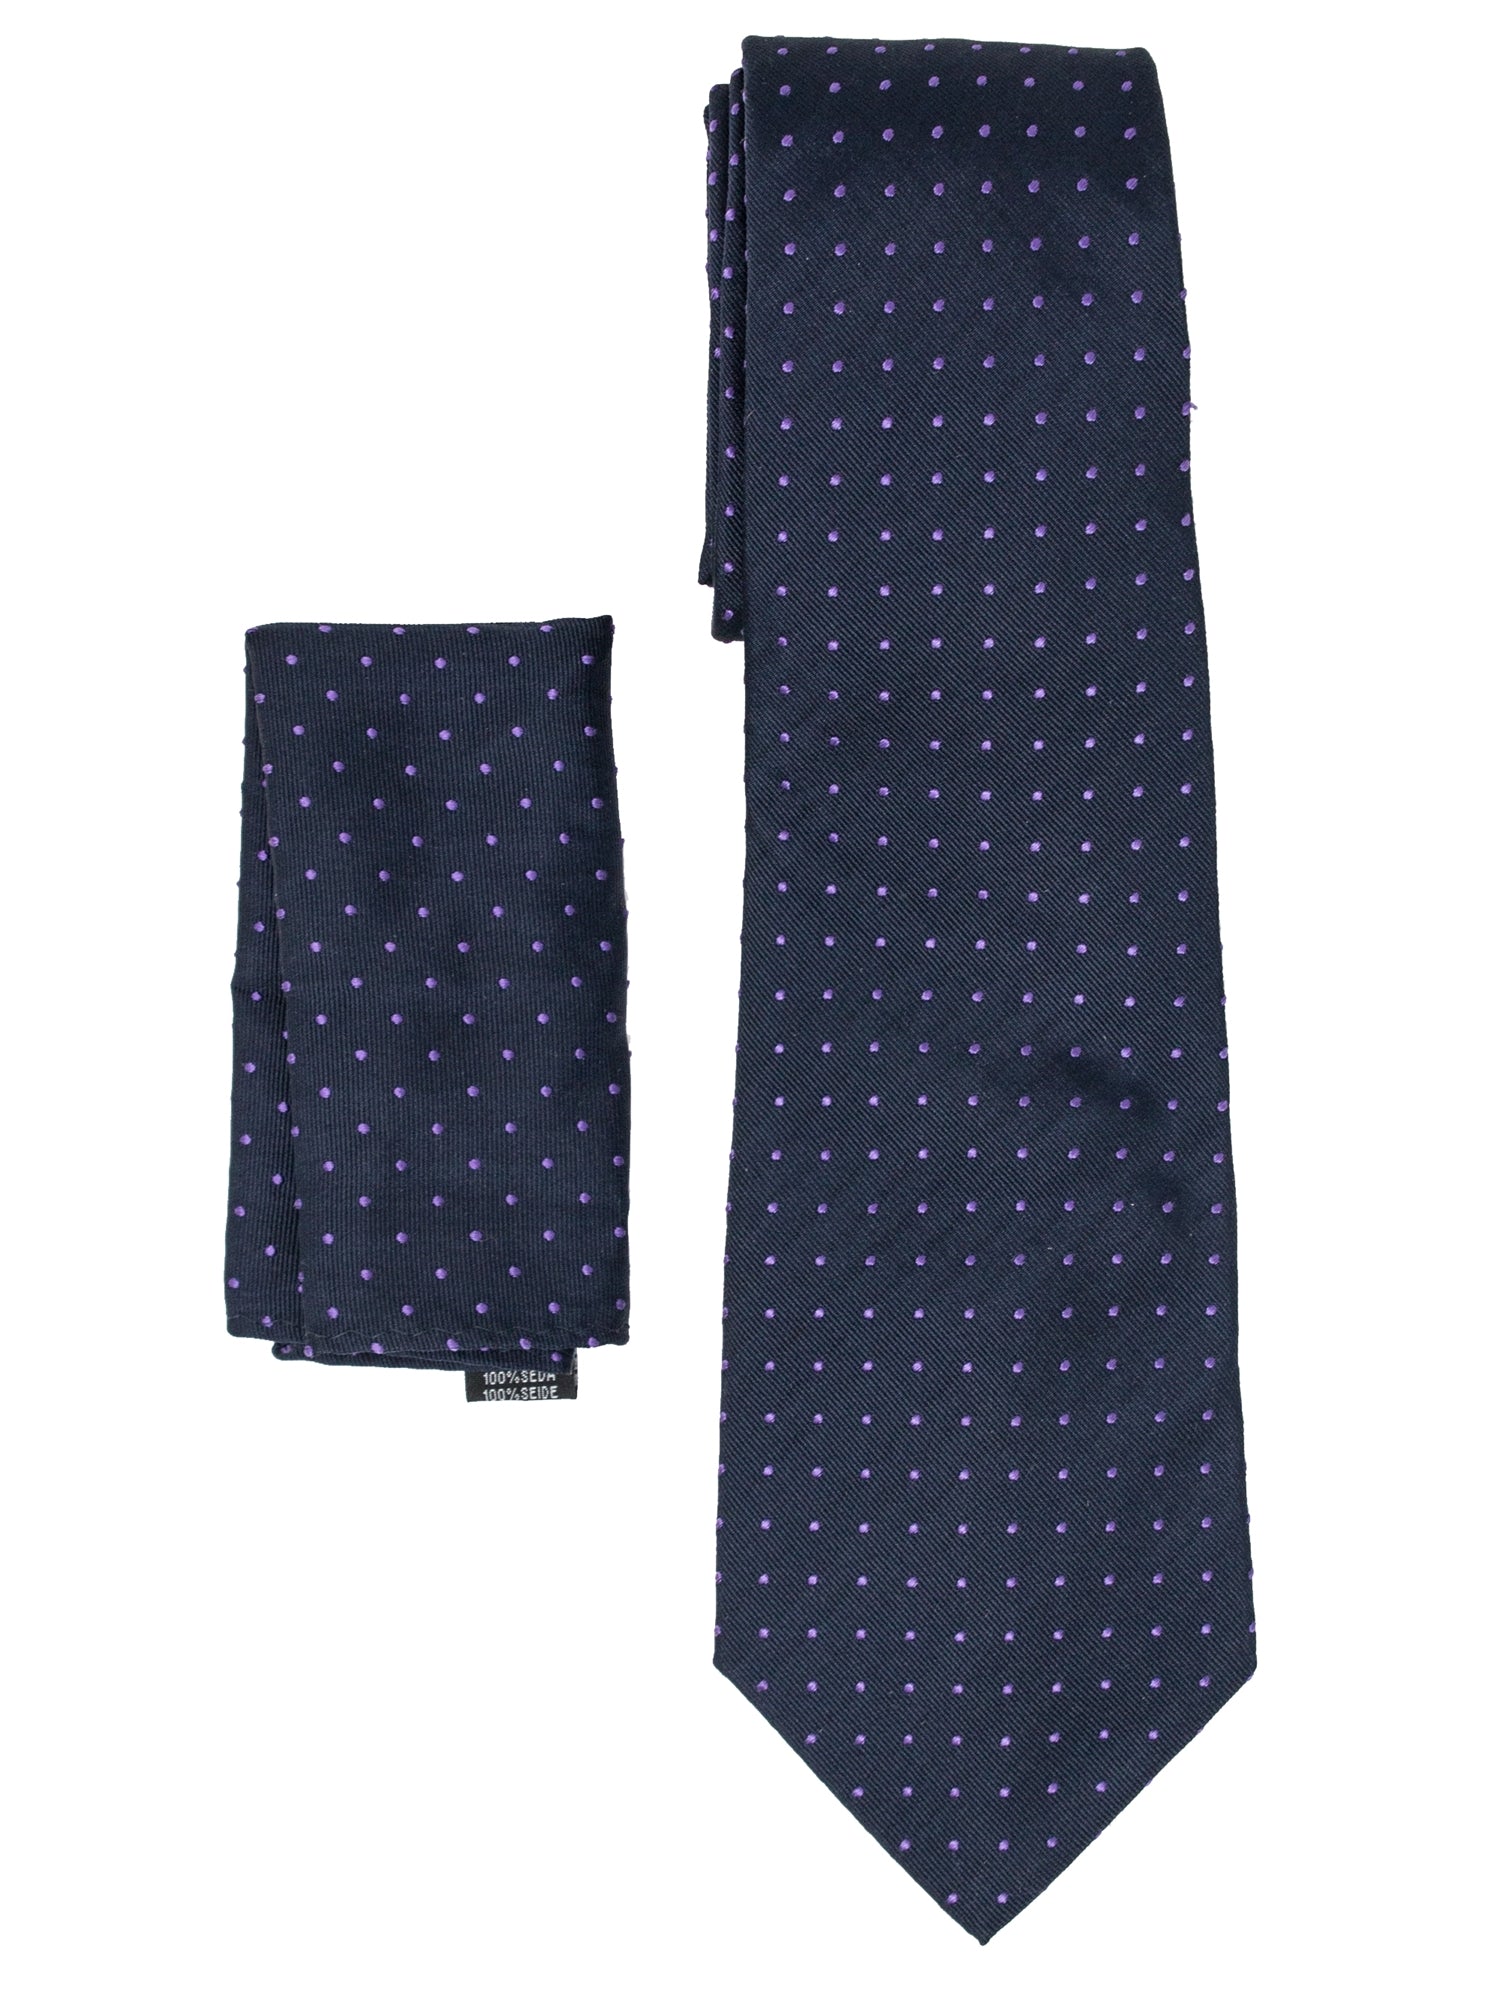 Men's Silk Woven Wedding Neck Tie With Handkerchief Neck Tie TheDapperTie Navy With Lavender Dots Regular 